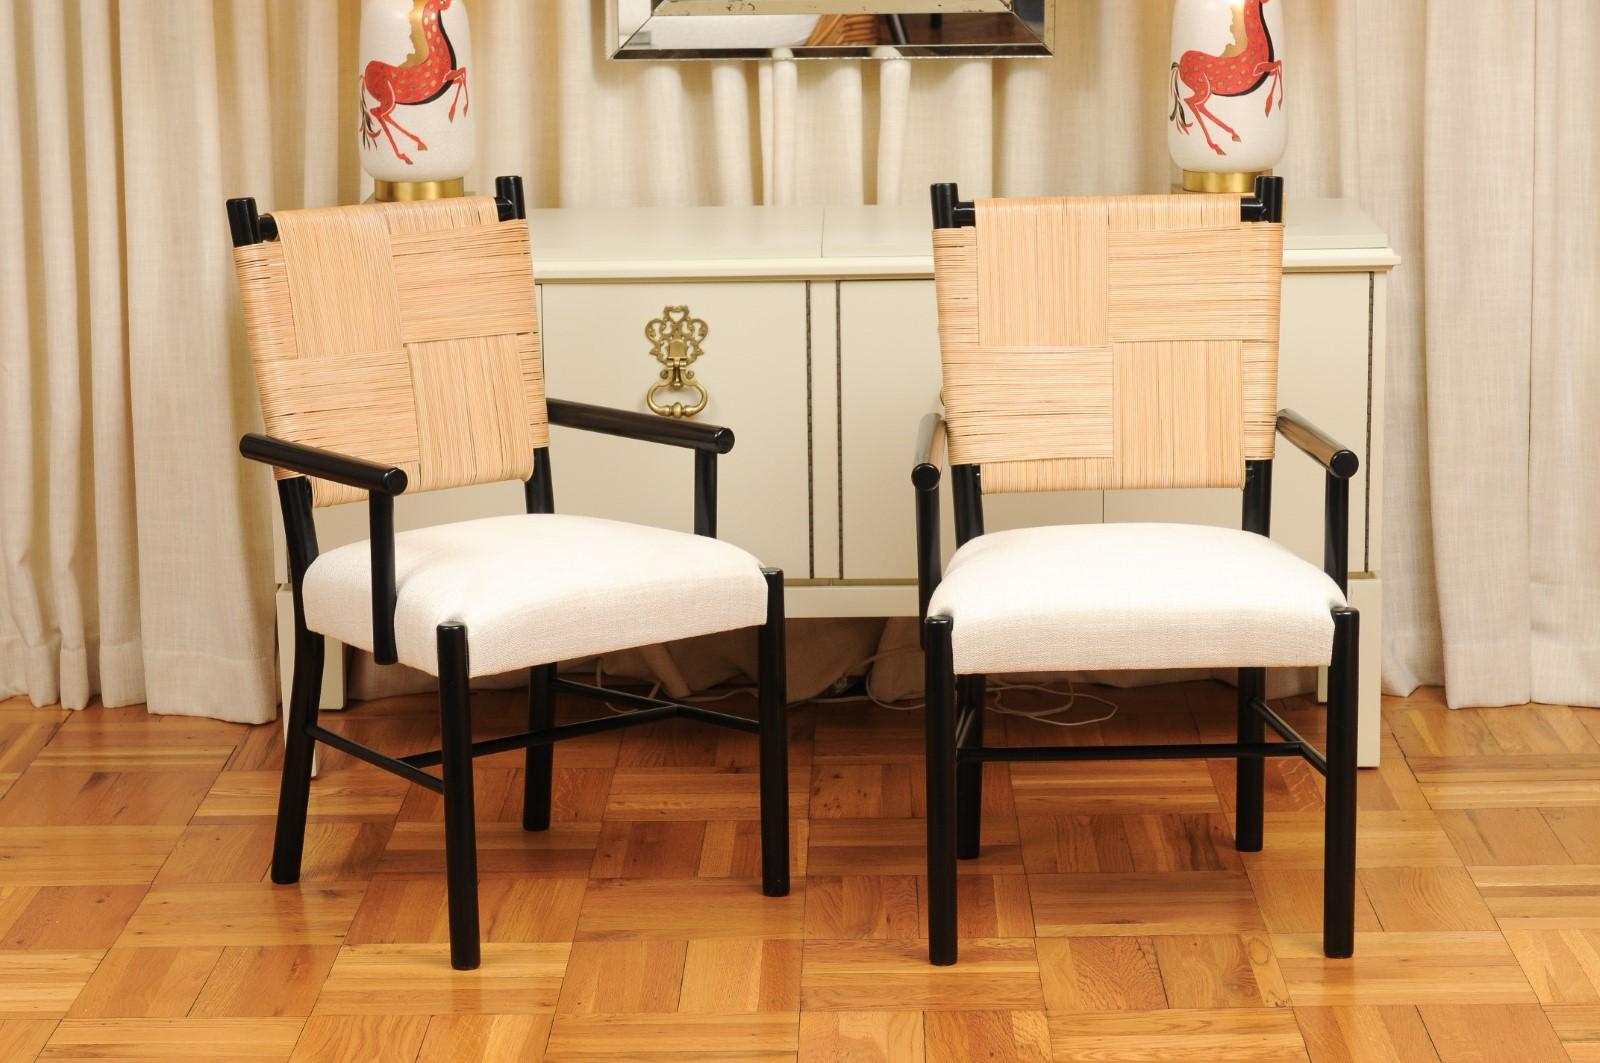 Ce magnifique ensemble de chaises de salle à manger ALL ARMS est unique sur le marché mondial. L'ensemble est expédié tel qu'il a été photographié et décrit par les professionnels dans le texte de l'annonce : Méticuleusement restauré par des